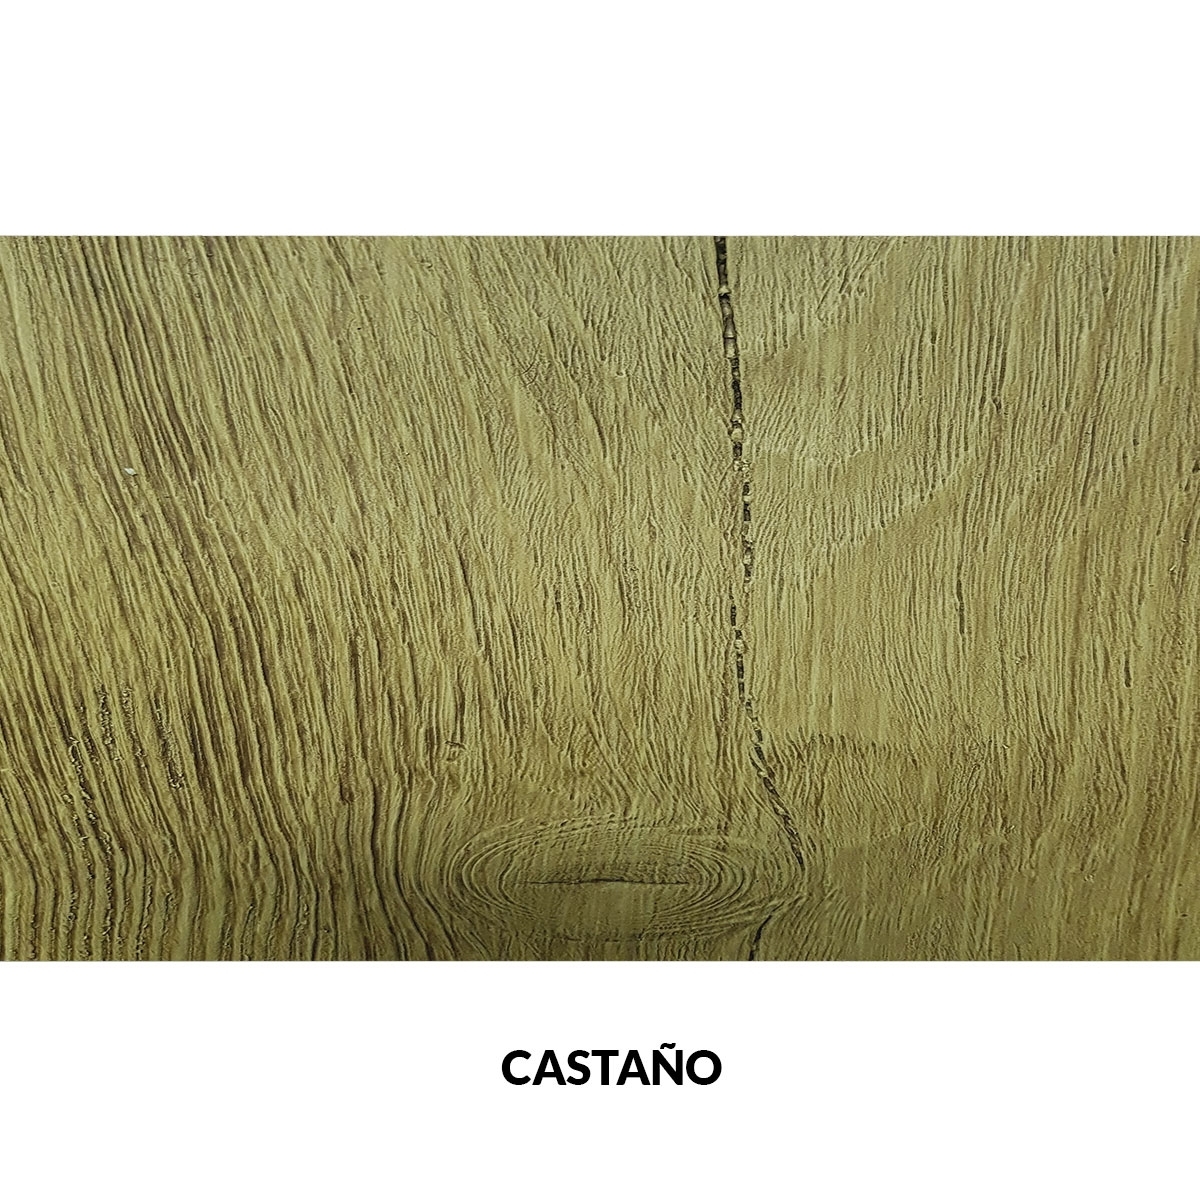 Panel rústico sin lamas imitación madera de 300x62cm castaño